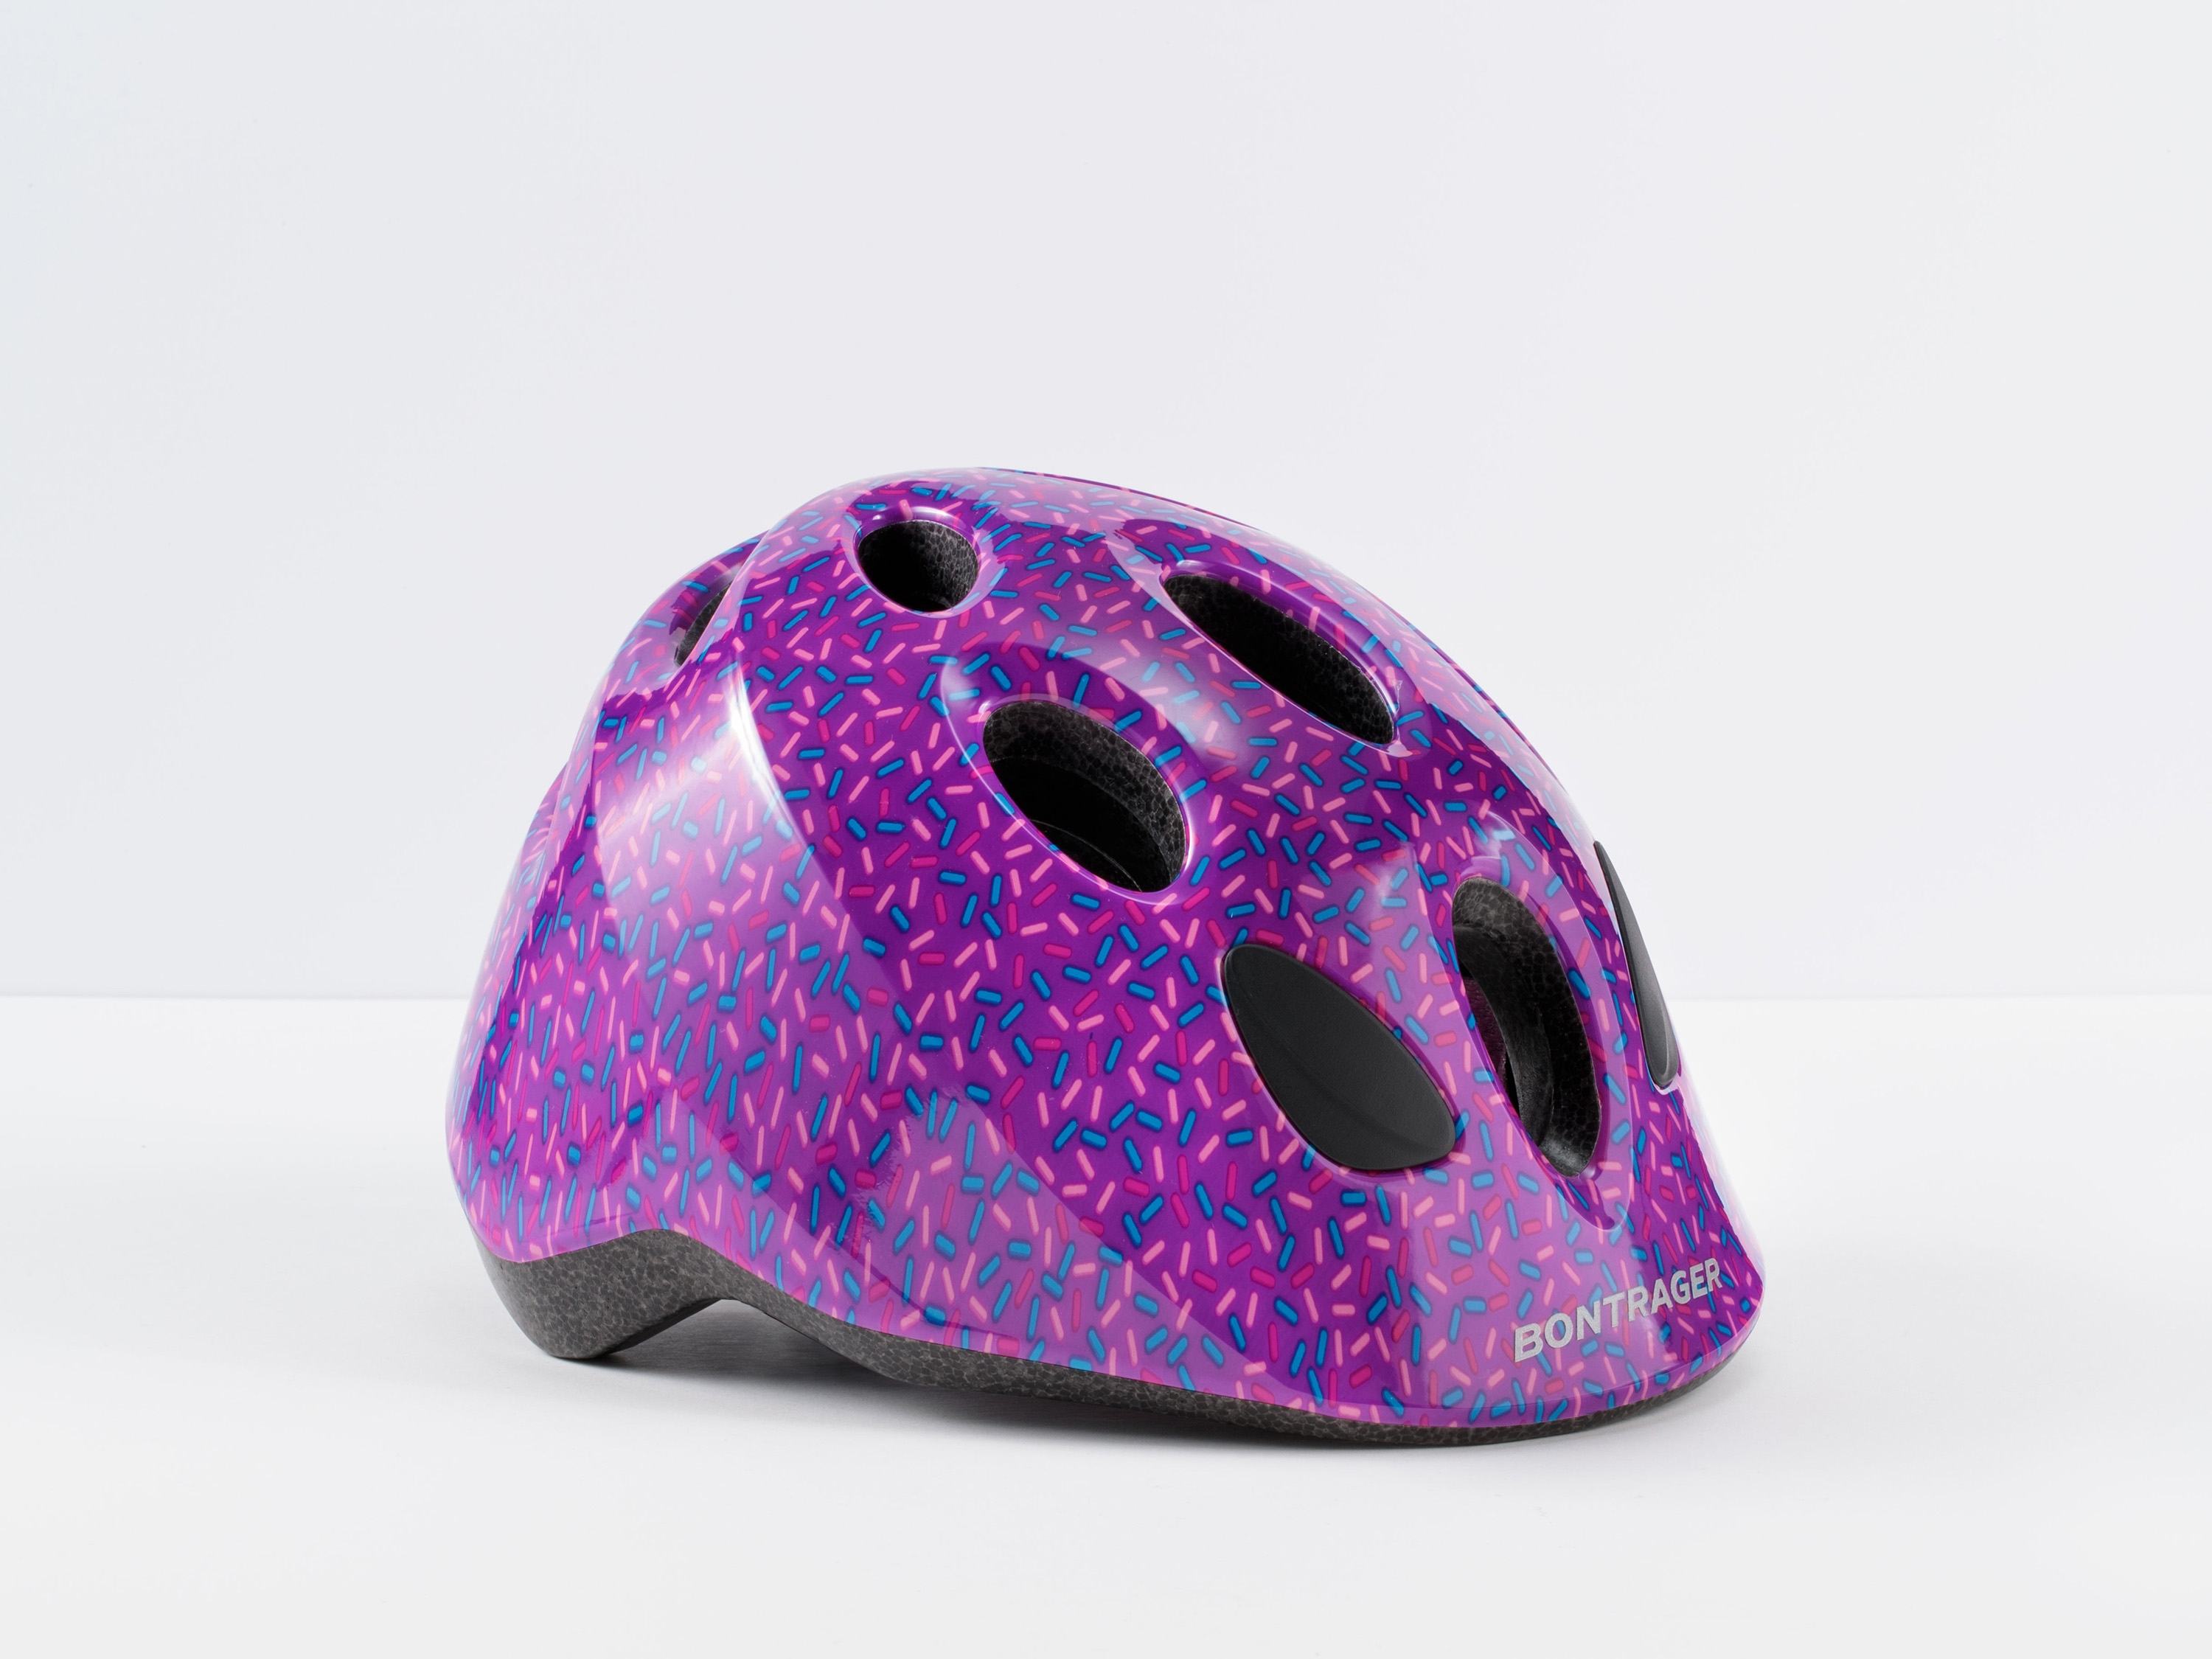 big bike helmet